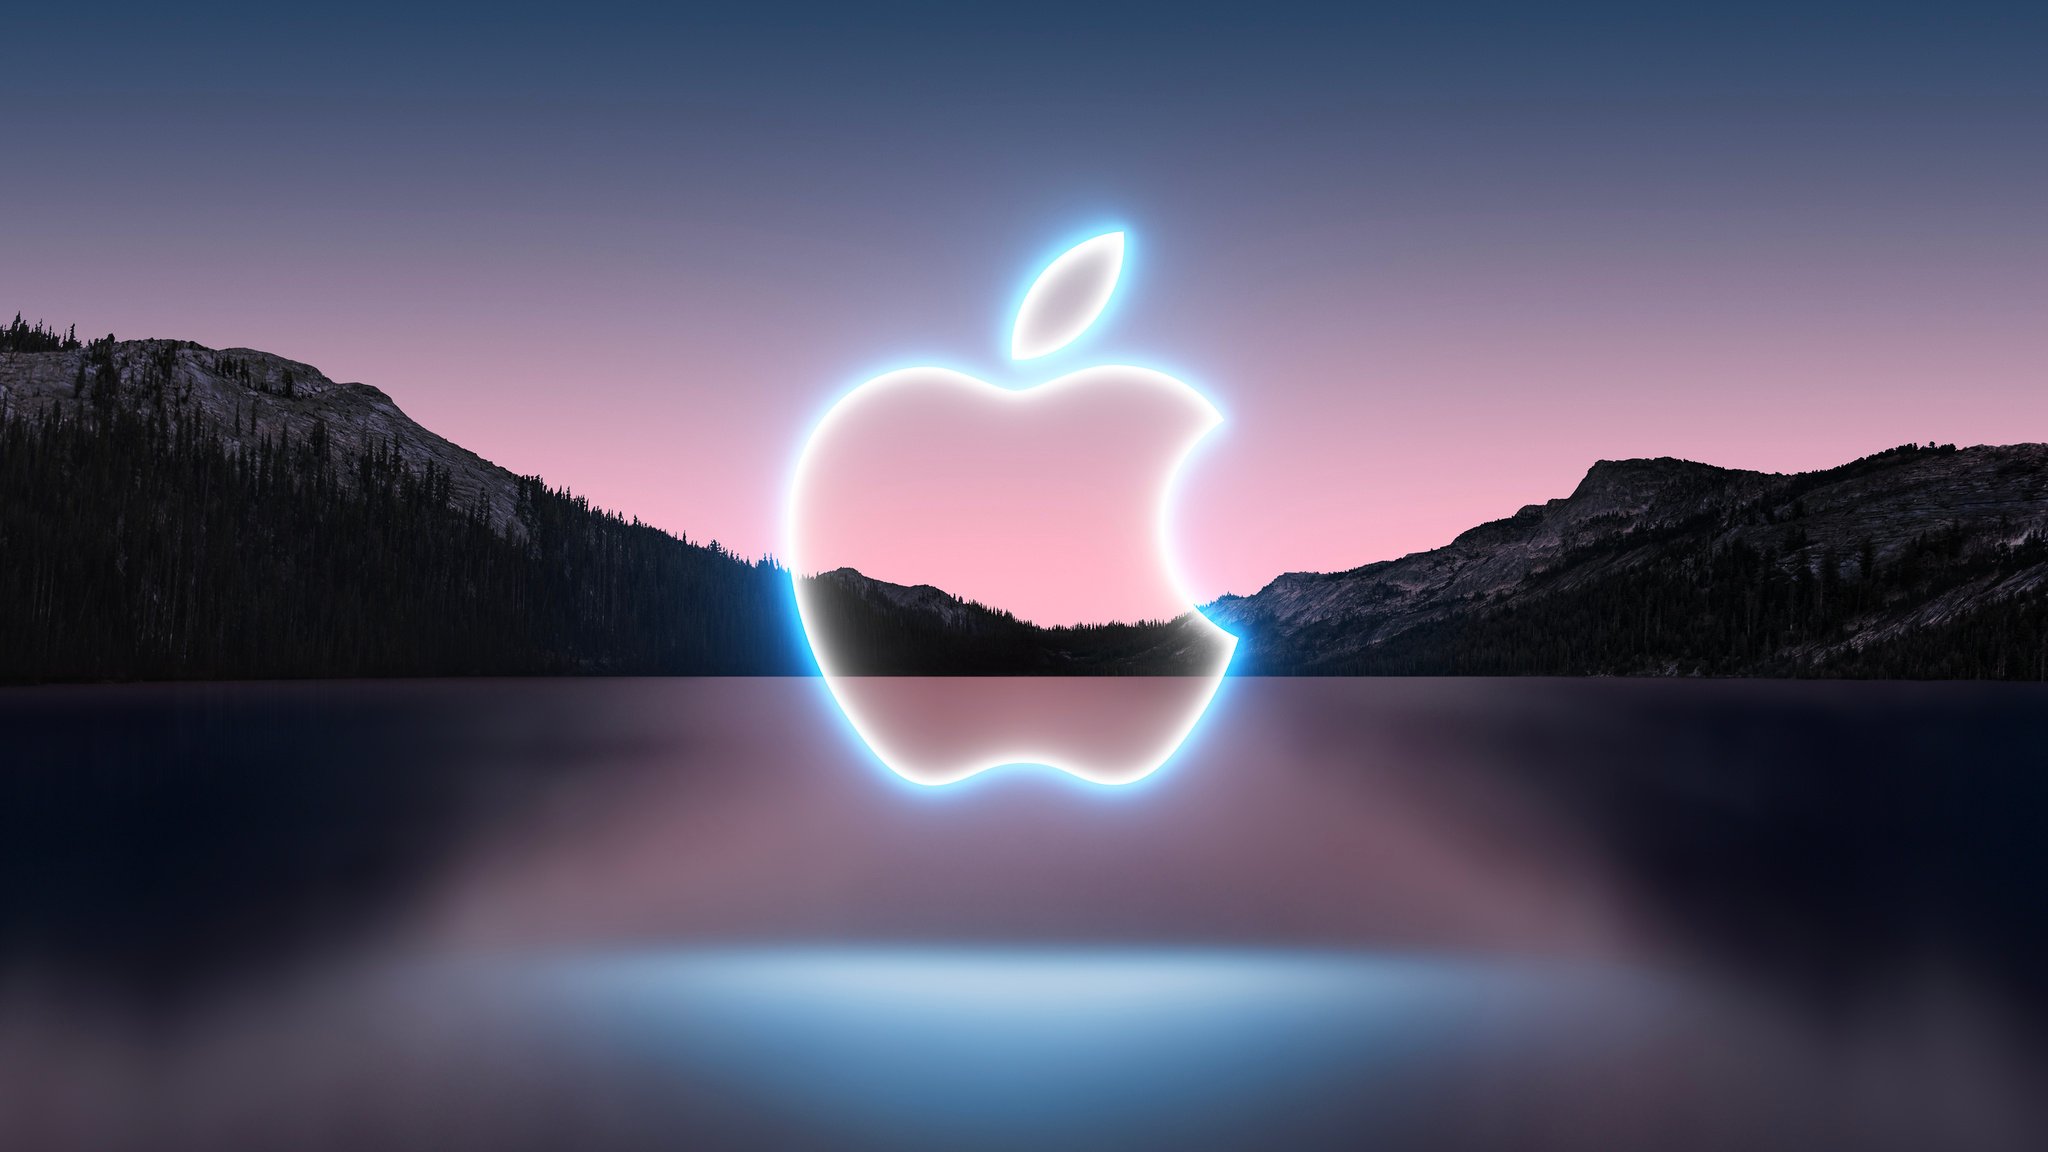 Στις 14 Σεπτεμβρίου η Apple θα ανακοινώσει το νέο iPhone 13